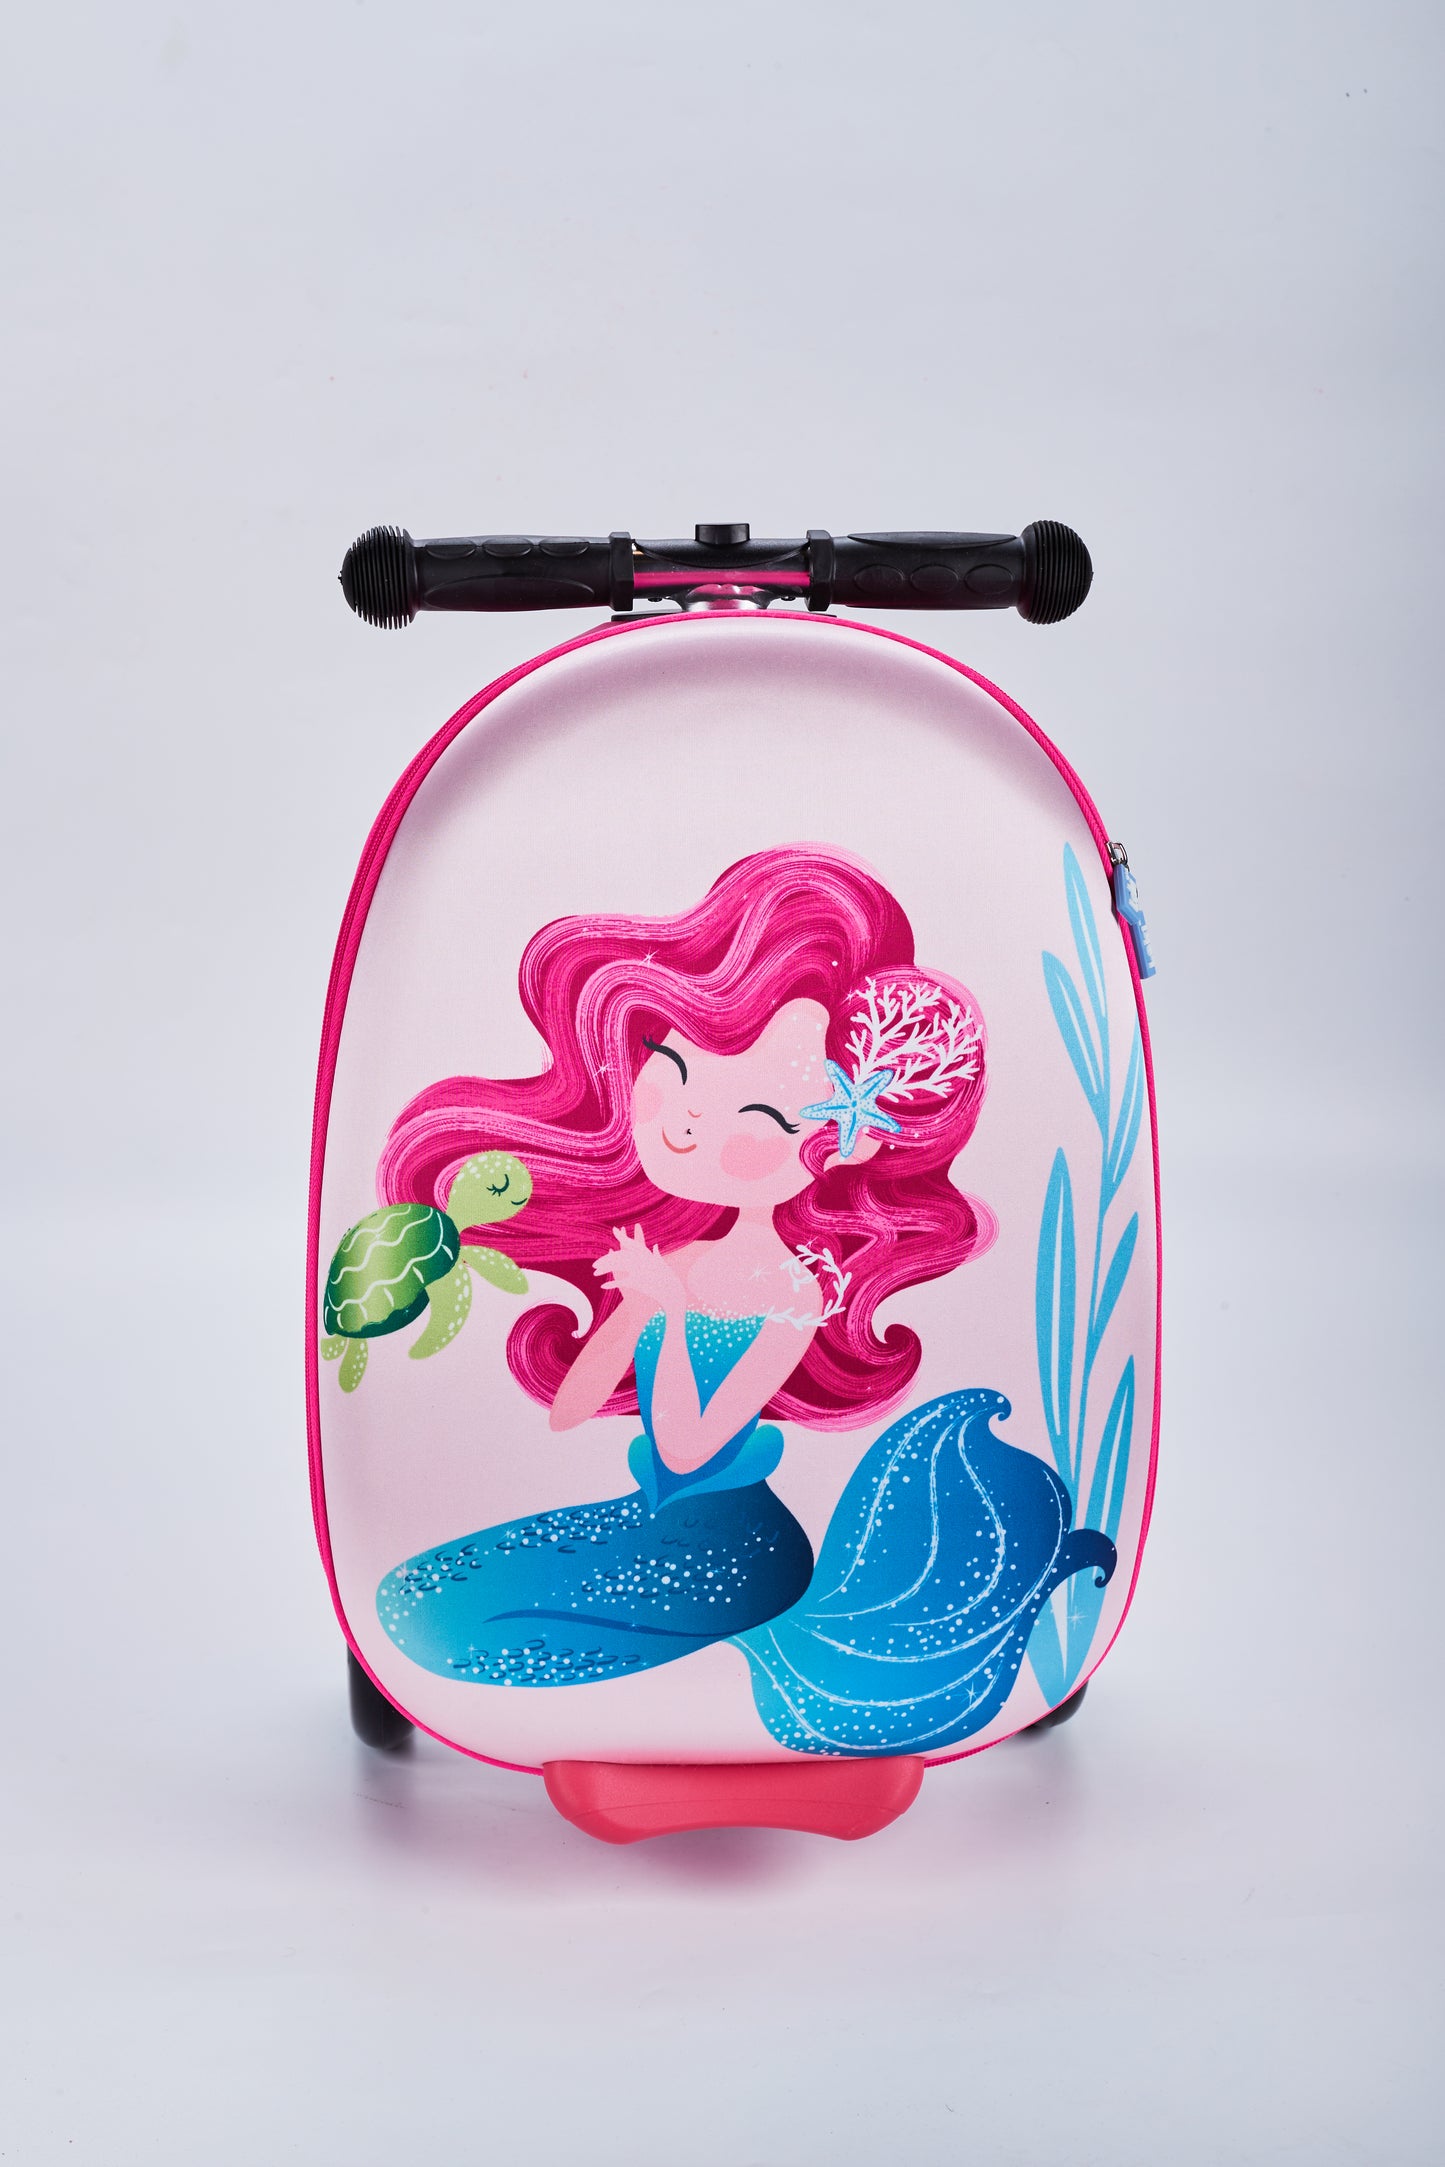 Scooter bag - mermaid